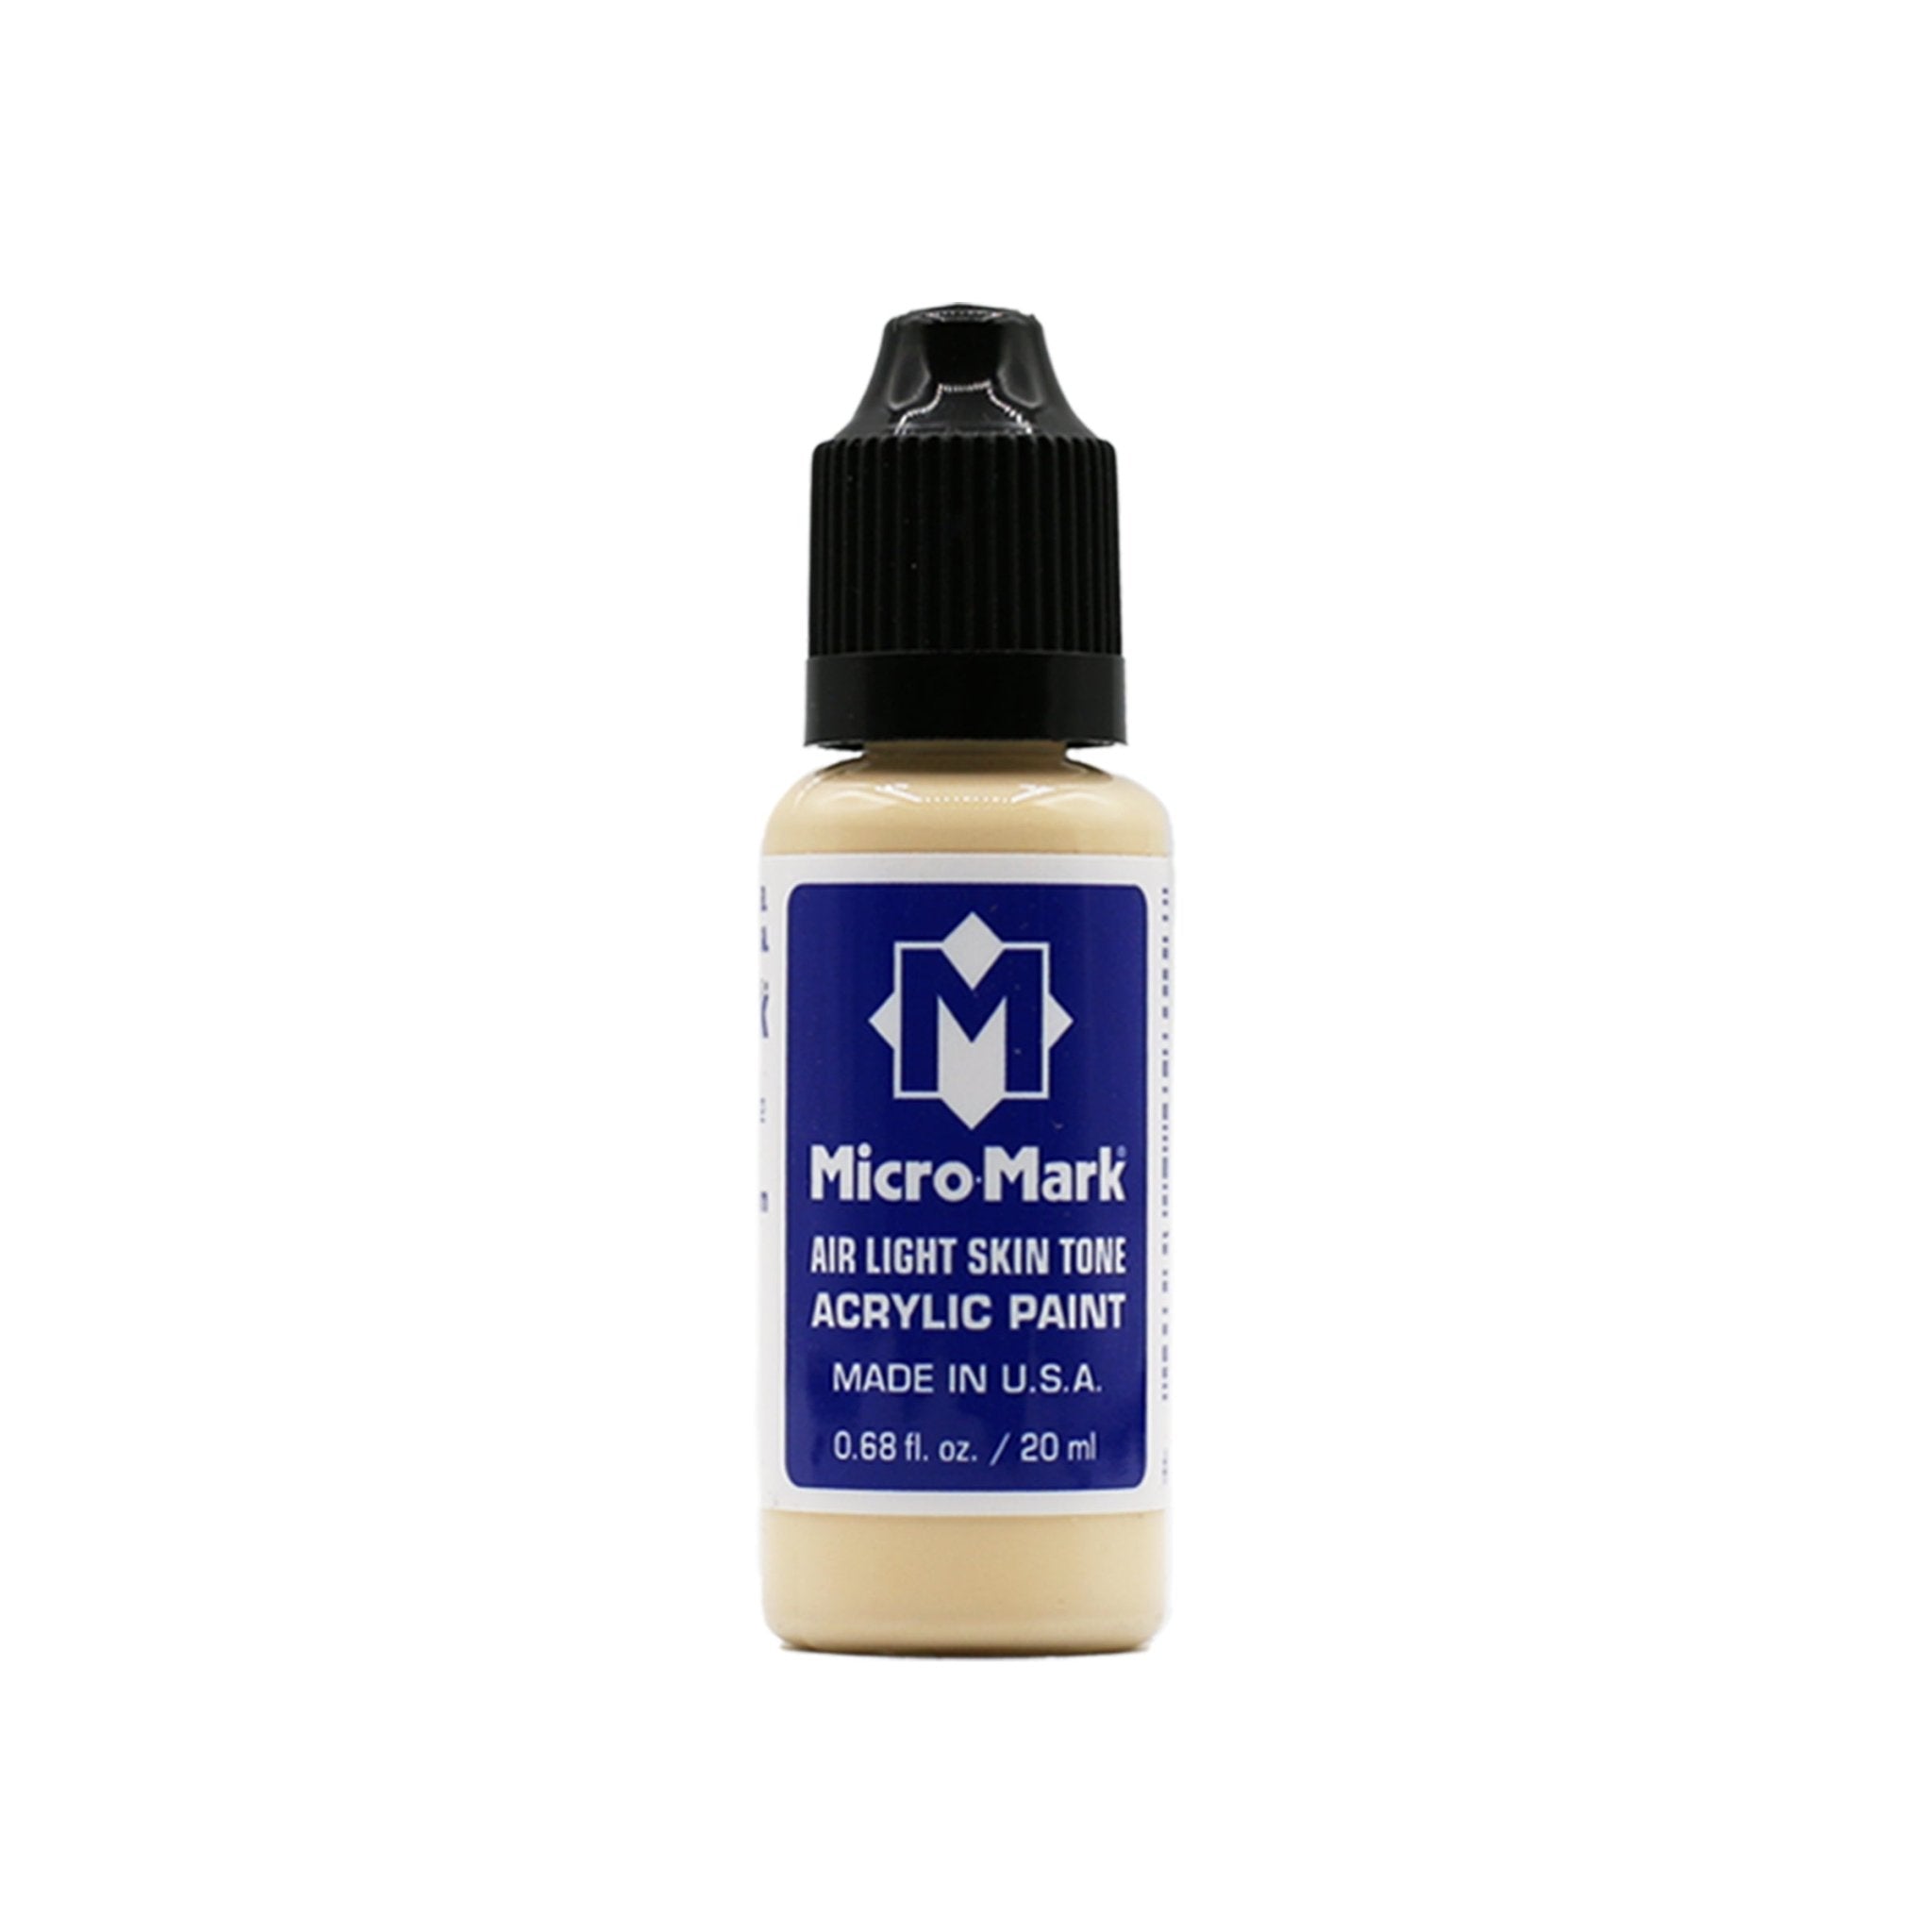 Micro - Mark Air Light Skin Tone Acrylic Paint, 20ml